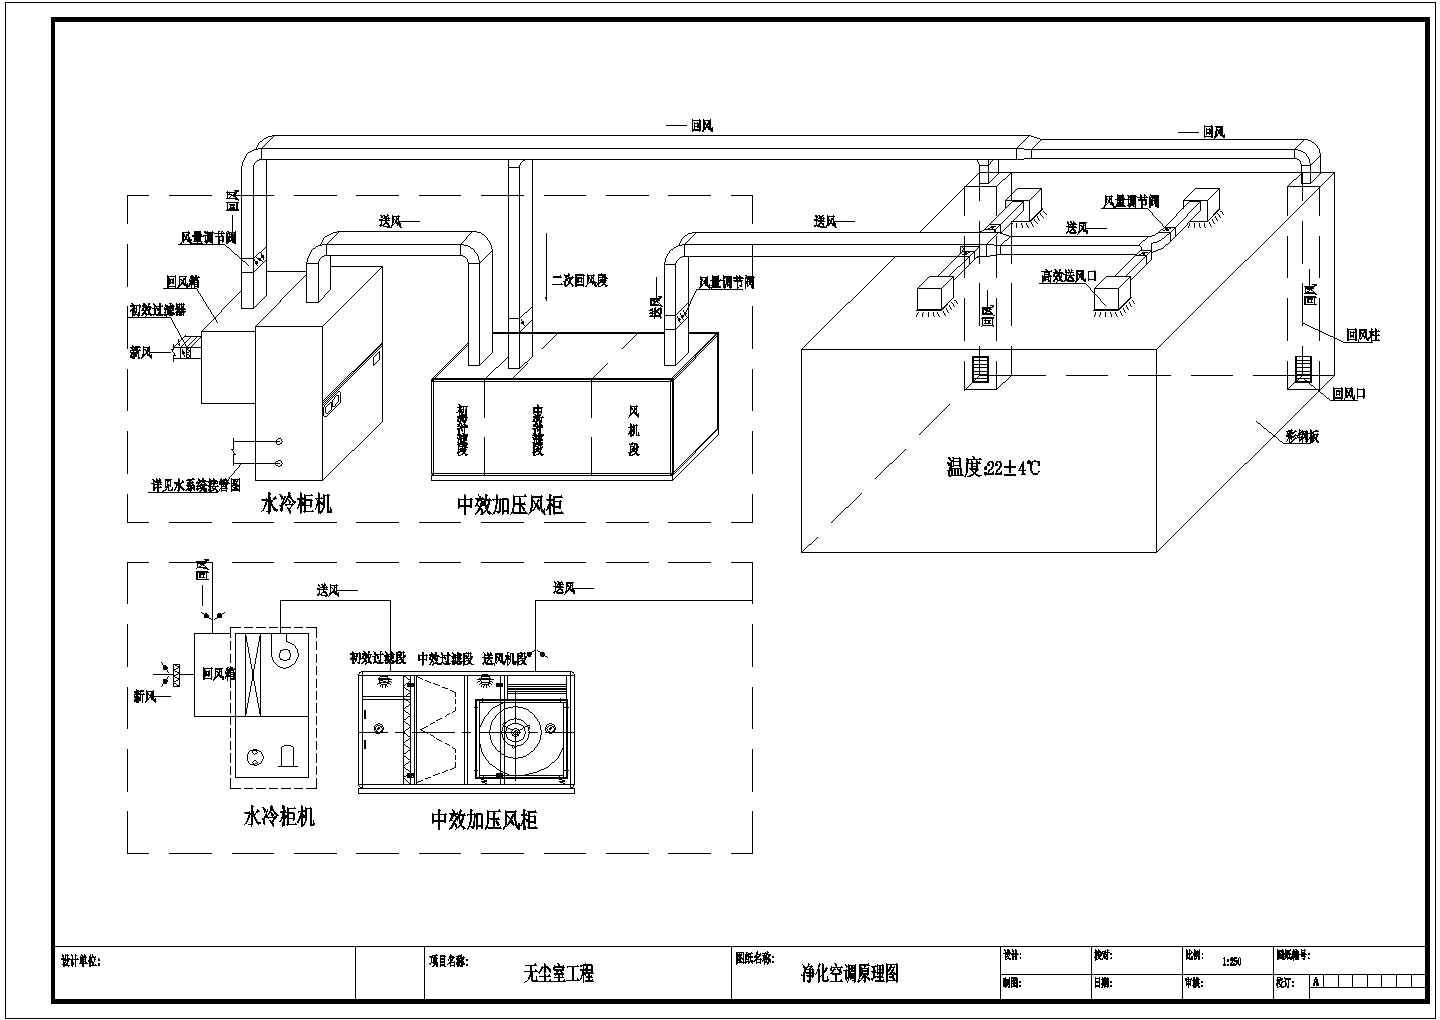 十万级净化厂房车间暖通设计施工图